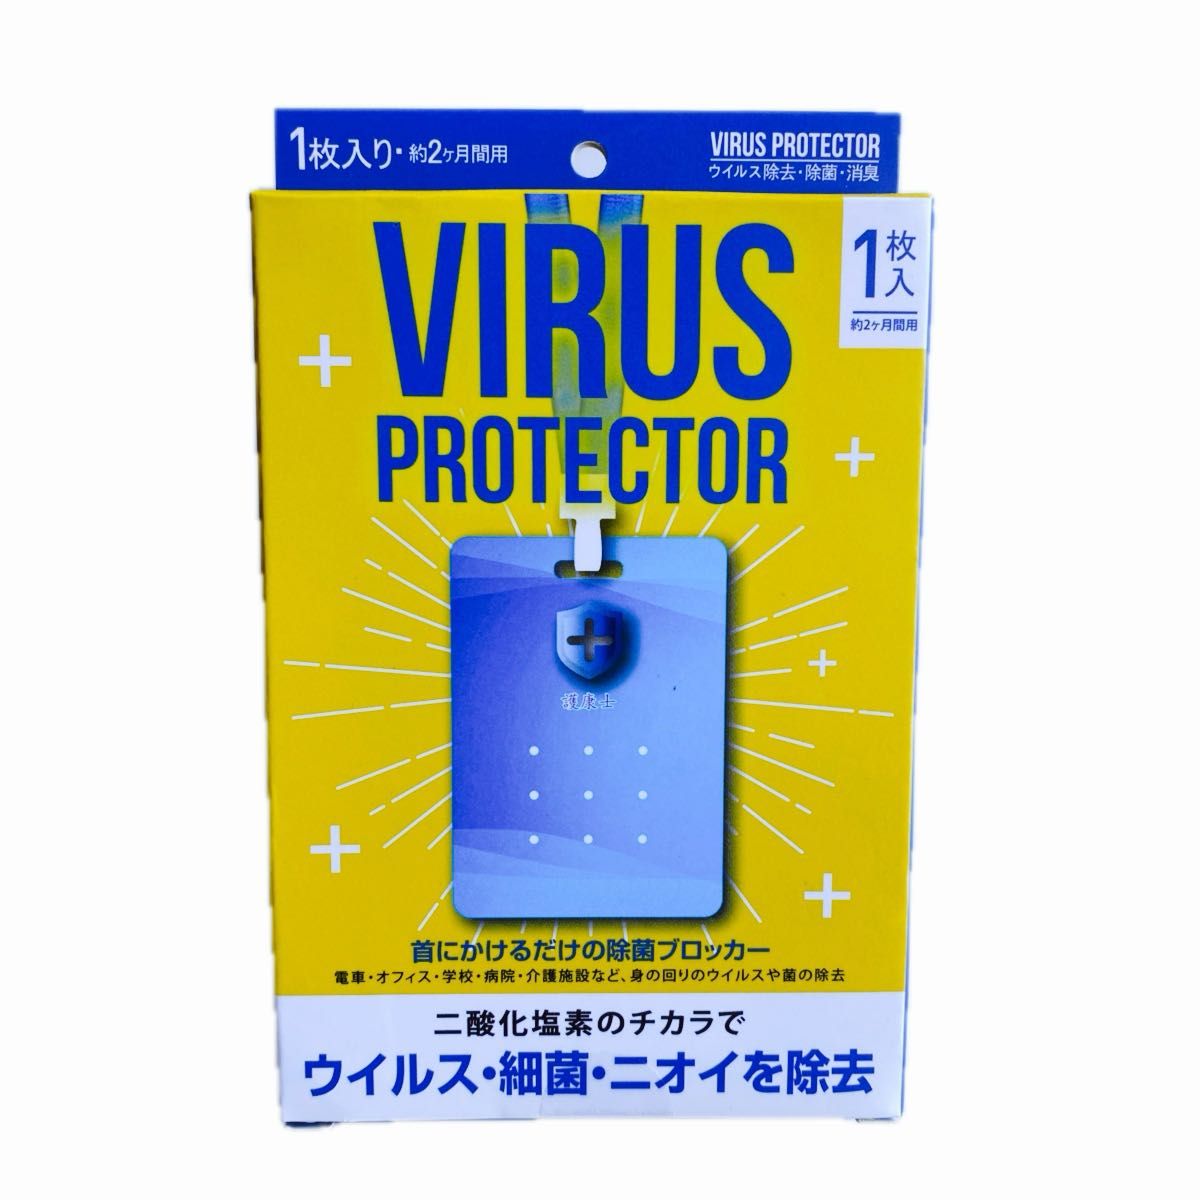 首掛け式 ウイルス除去 空間除菌カード ウイルスプロテクター